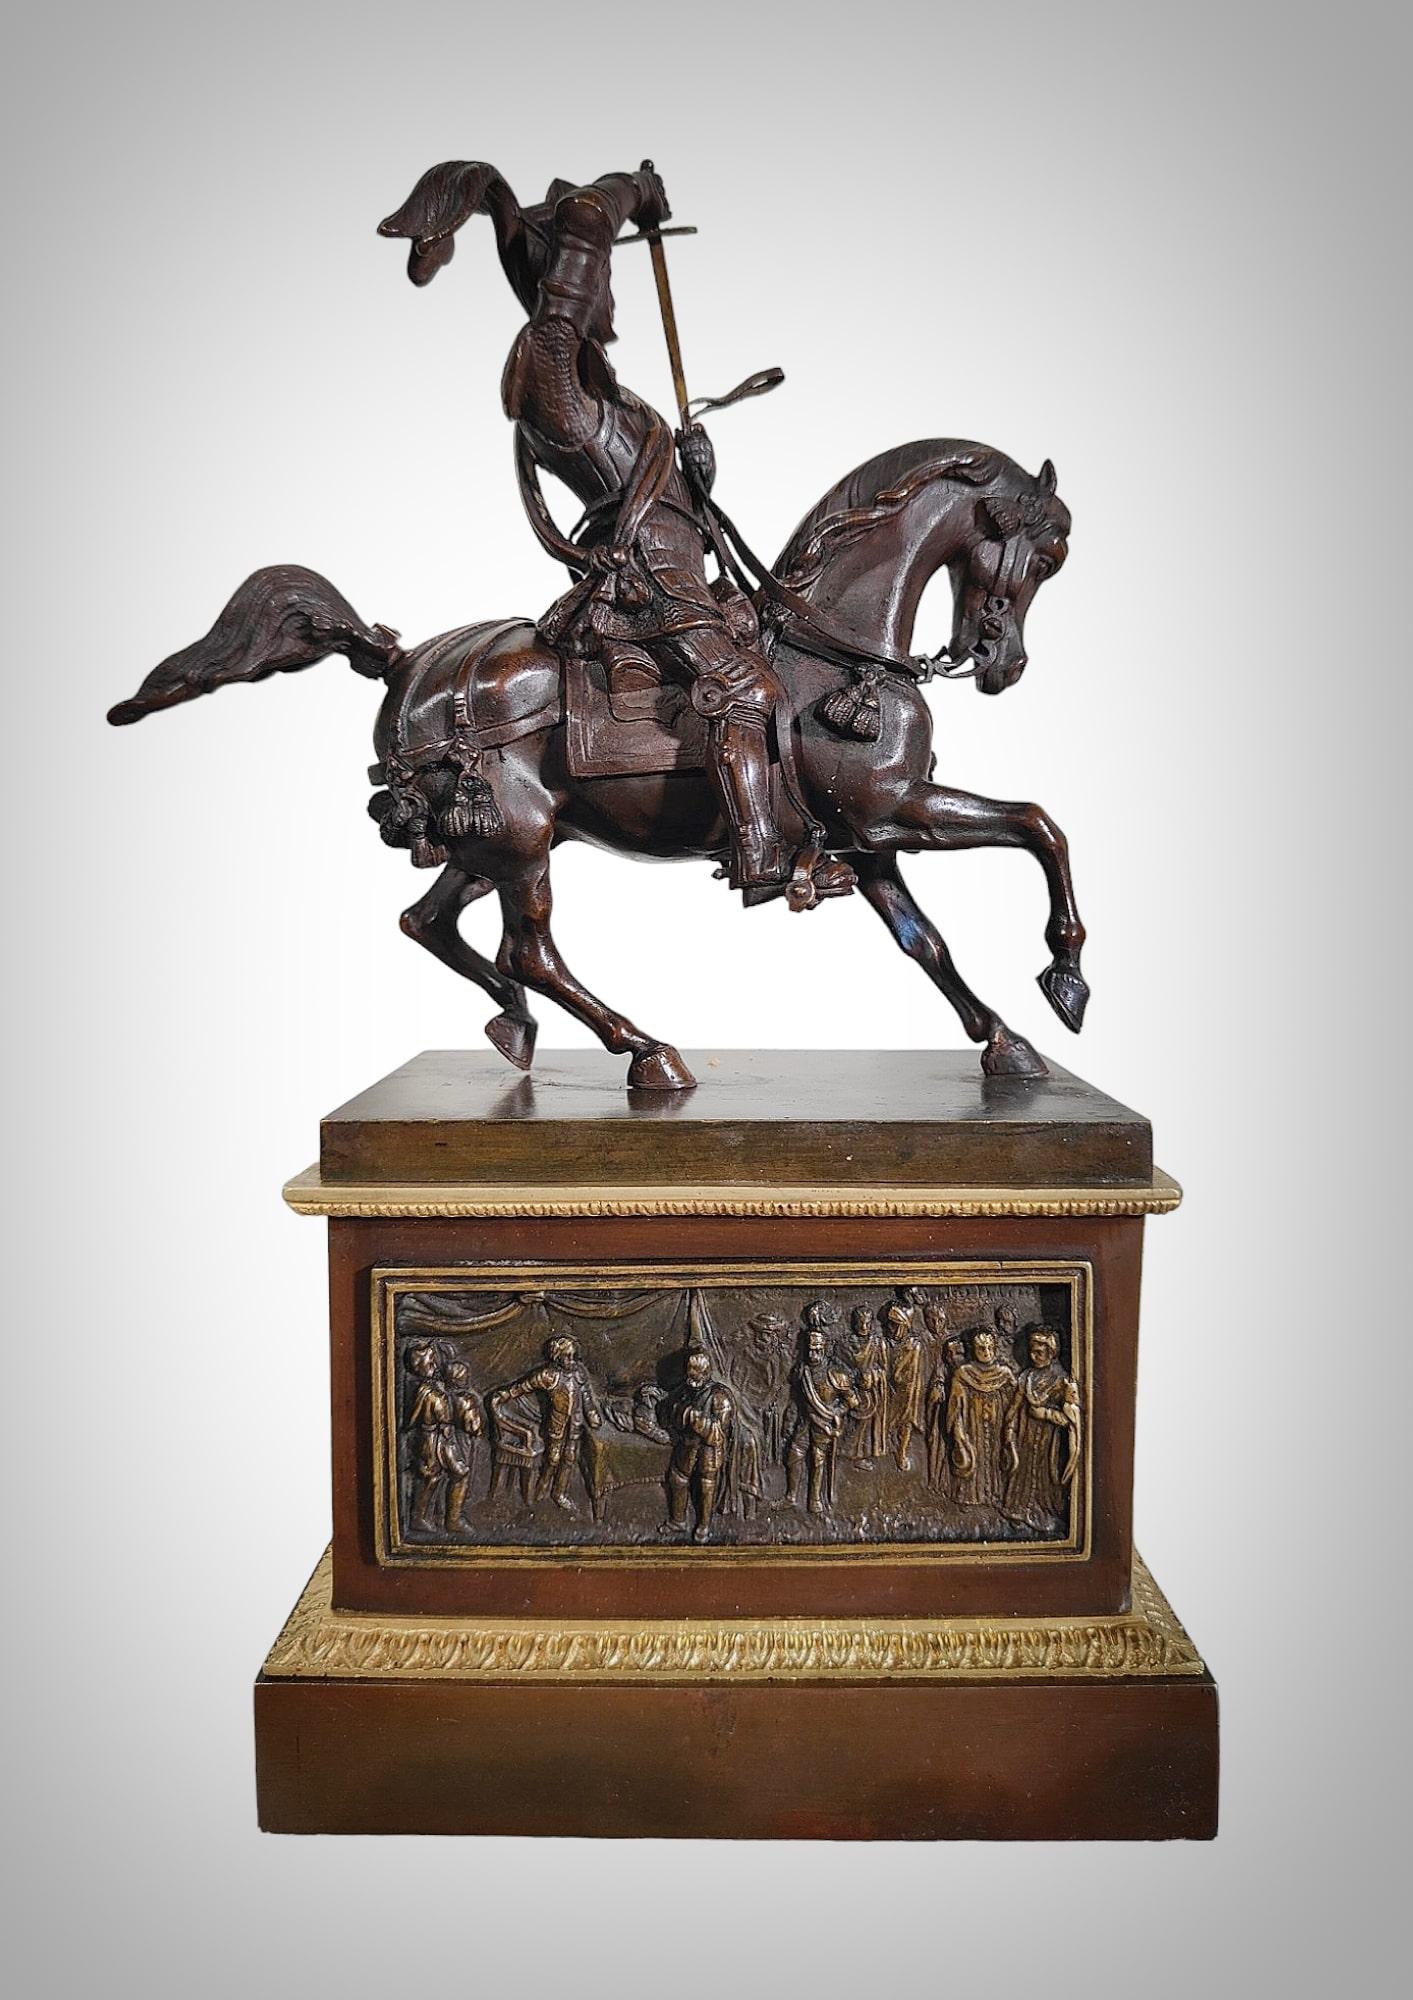 Entdecken Sie mit dieser spektakulären Bronzestatue des Herzogs von Savoyen, einem Meisterwerk des berühmten Bildhauers Carlo Marochetti, ein wahres Juwel der Bildhauerei des 19. Jahrhunderts!

Stellen Sie sich die imposante Präsenz dieser edlen